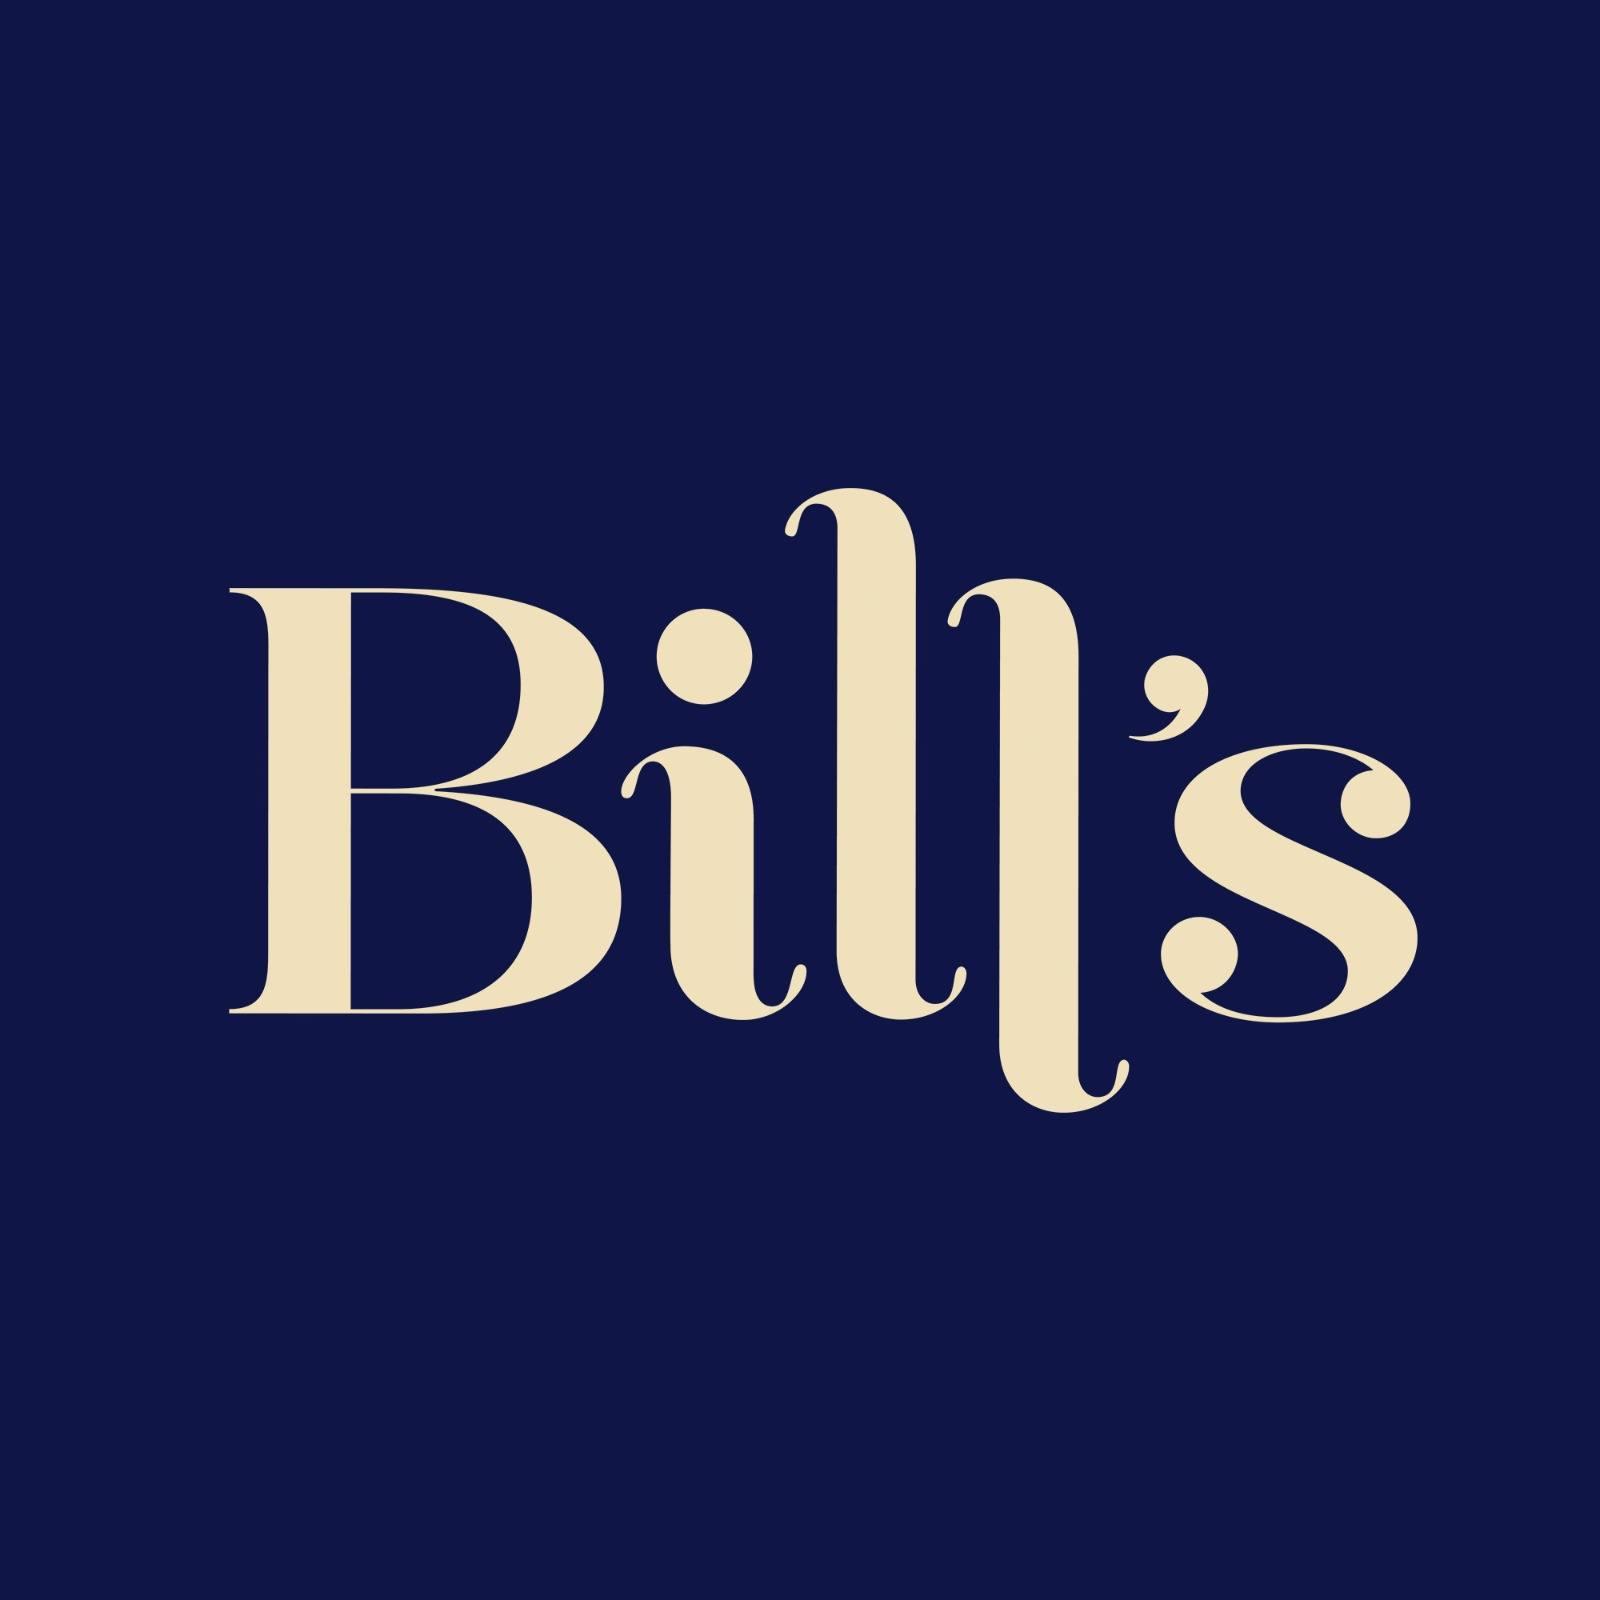 Bill's Restaurants